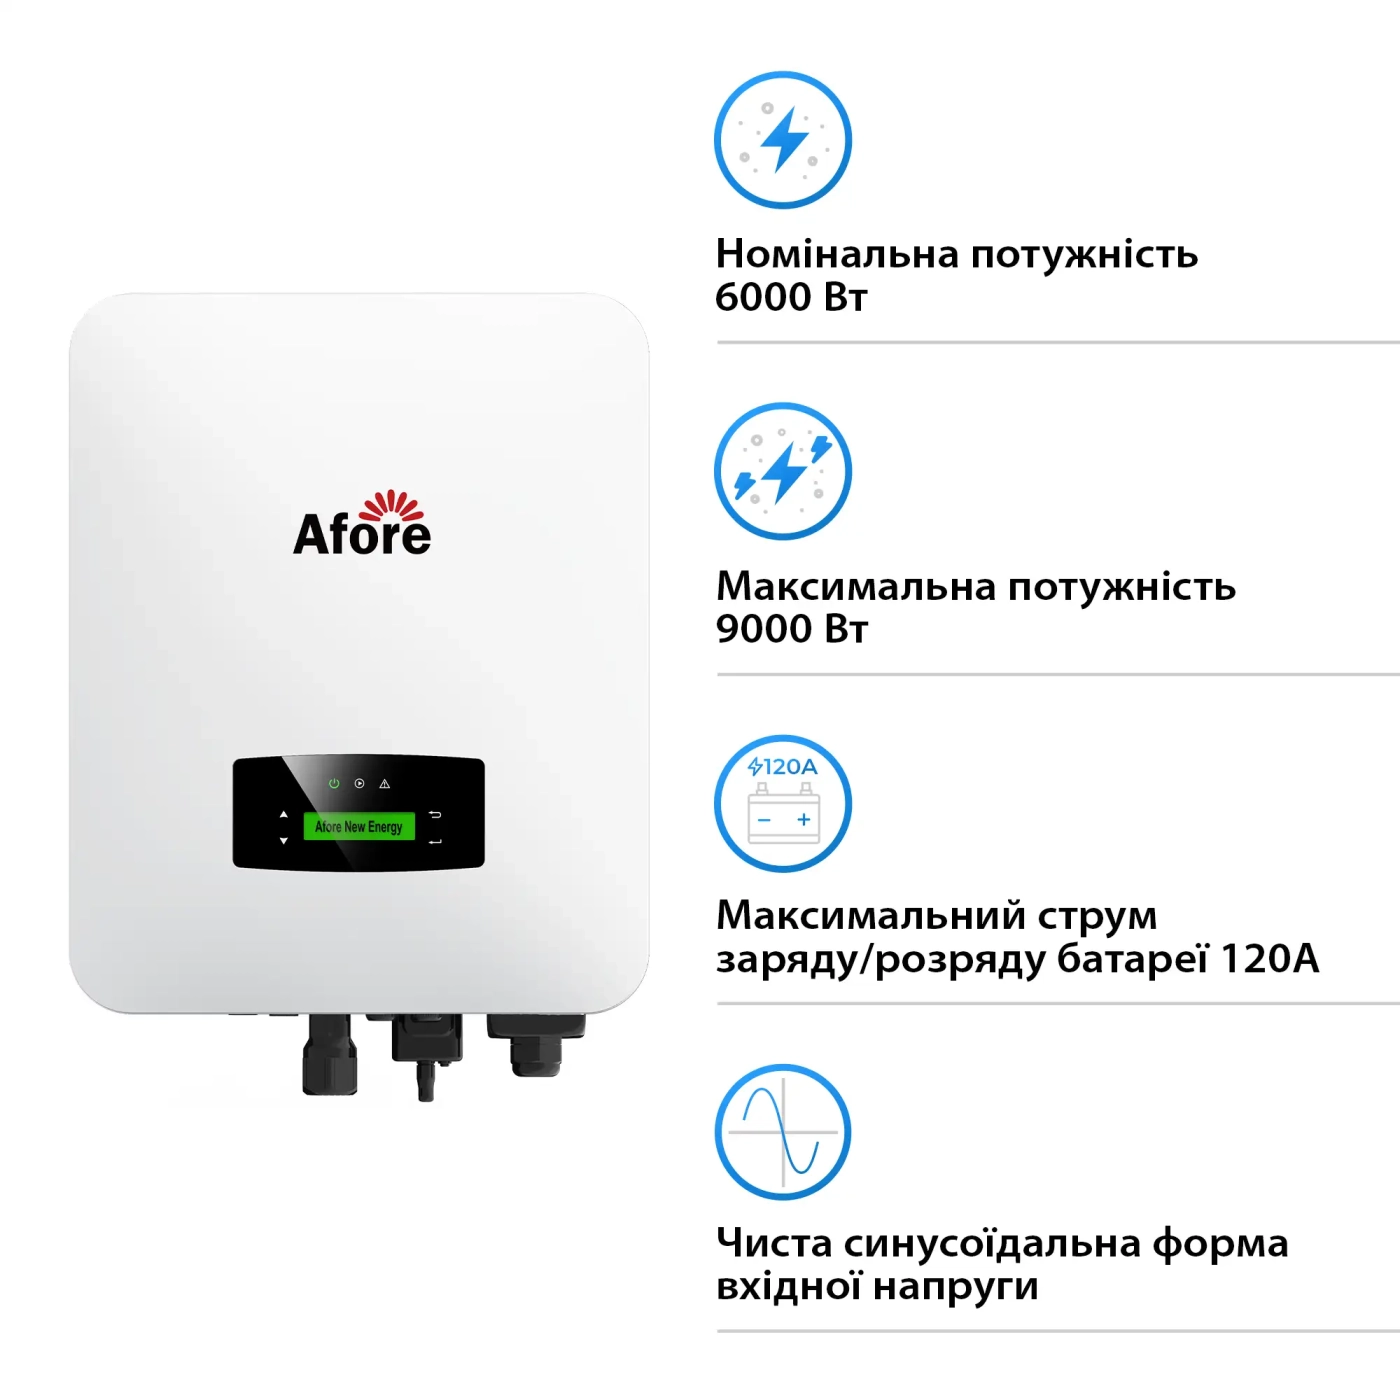 Купить Гибридный инвертор Afore AF6K-SLP 6KW 48V 2 MPPT Wi-Fi 220V Однофазный (AF6K-SLP) - фото 2